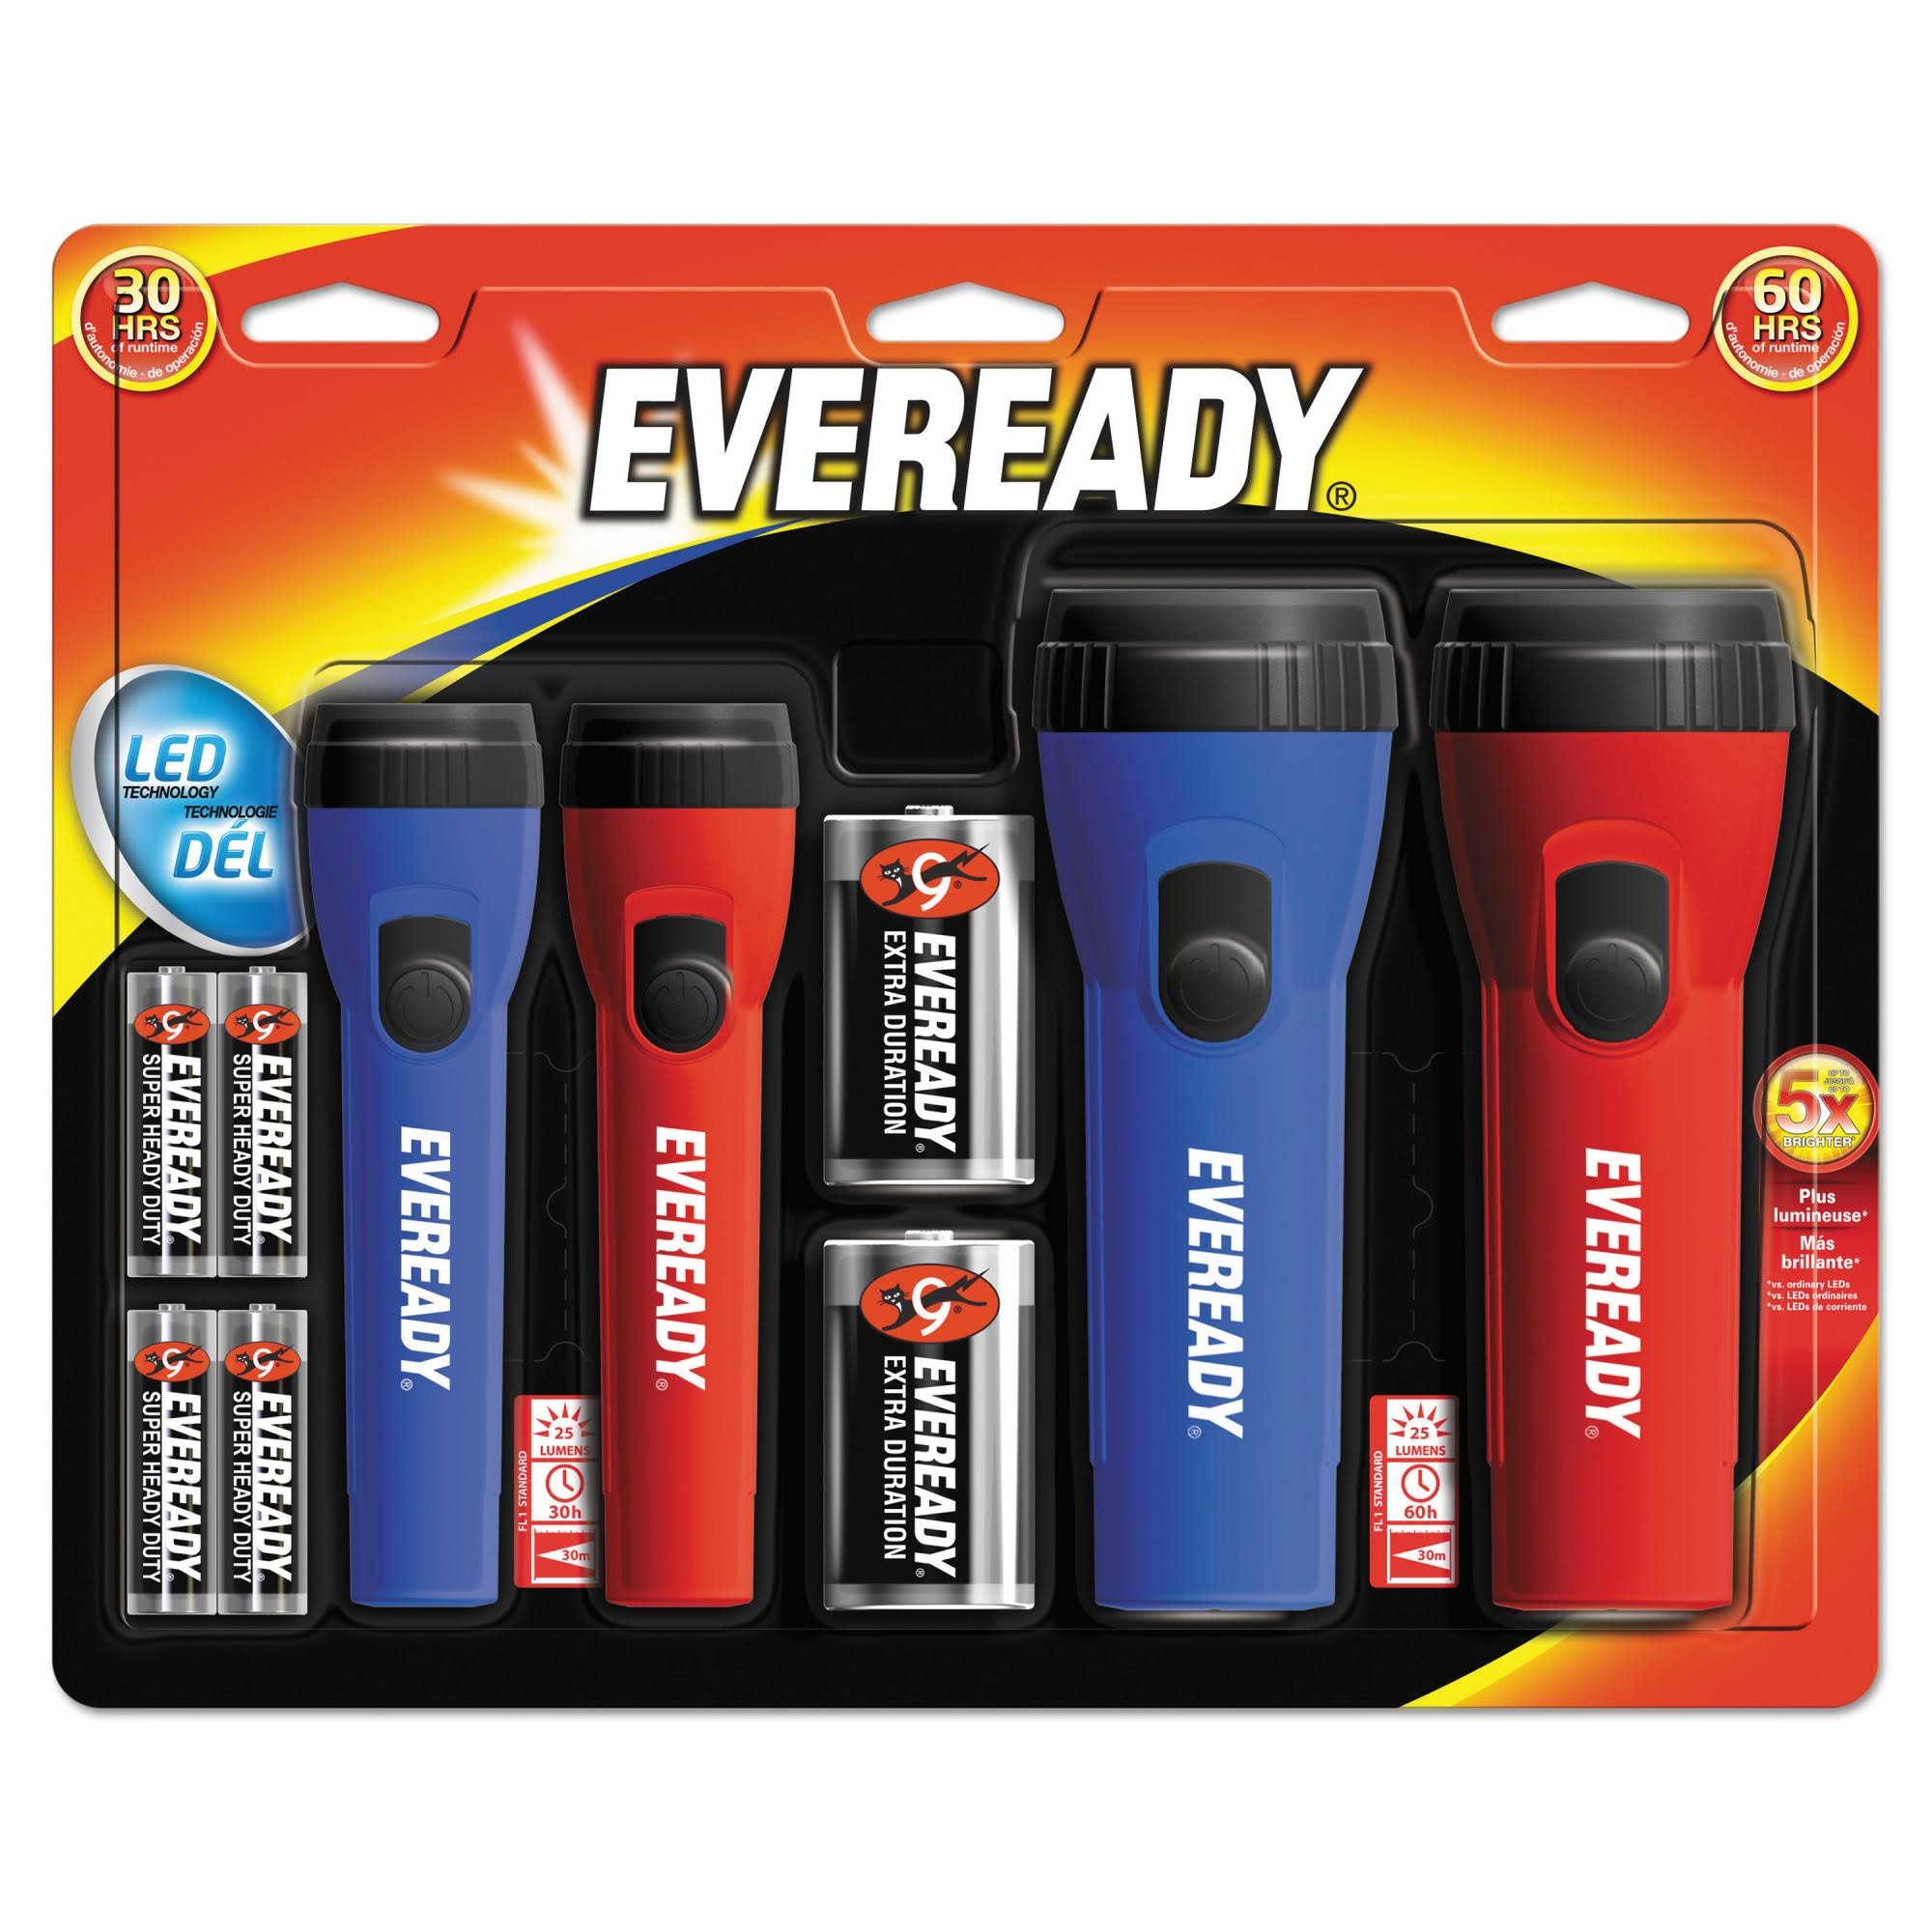 Eveready LED Flashlights - 4 Pack